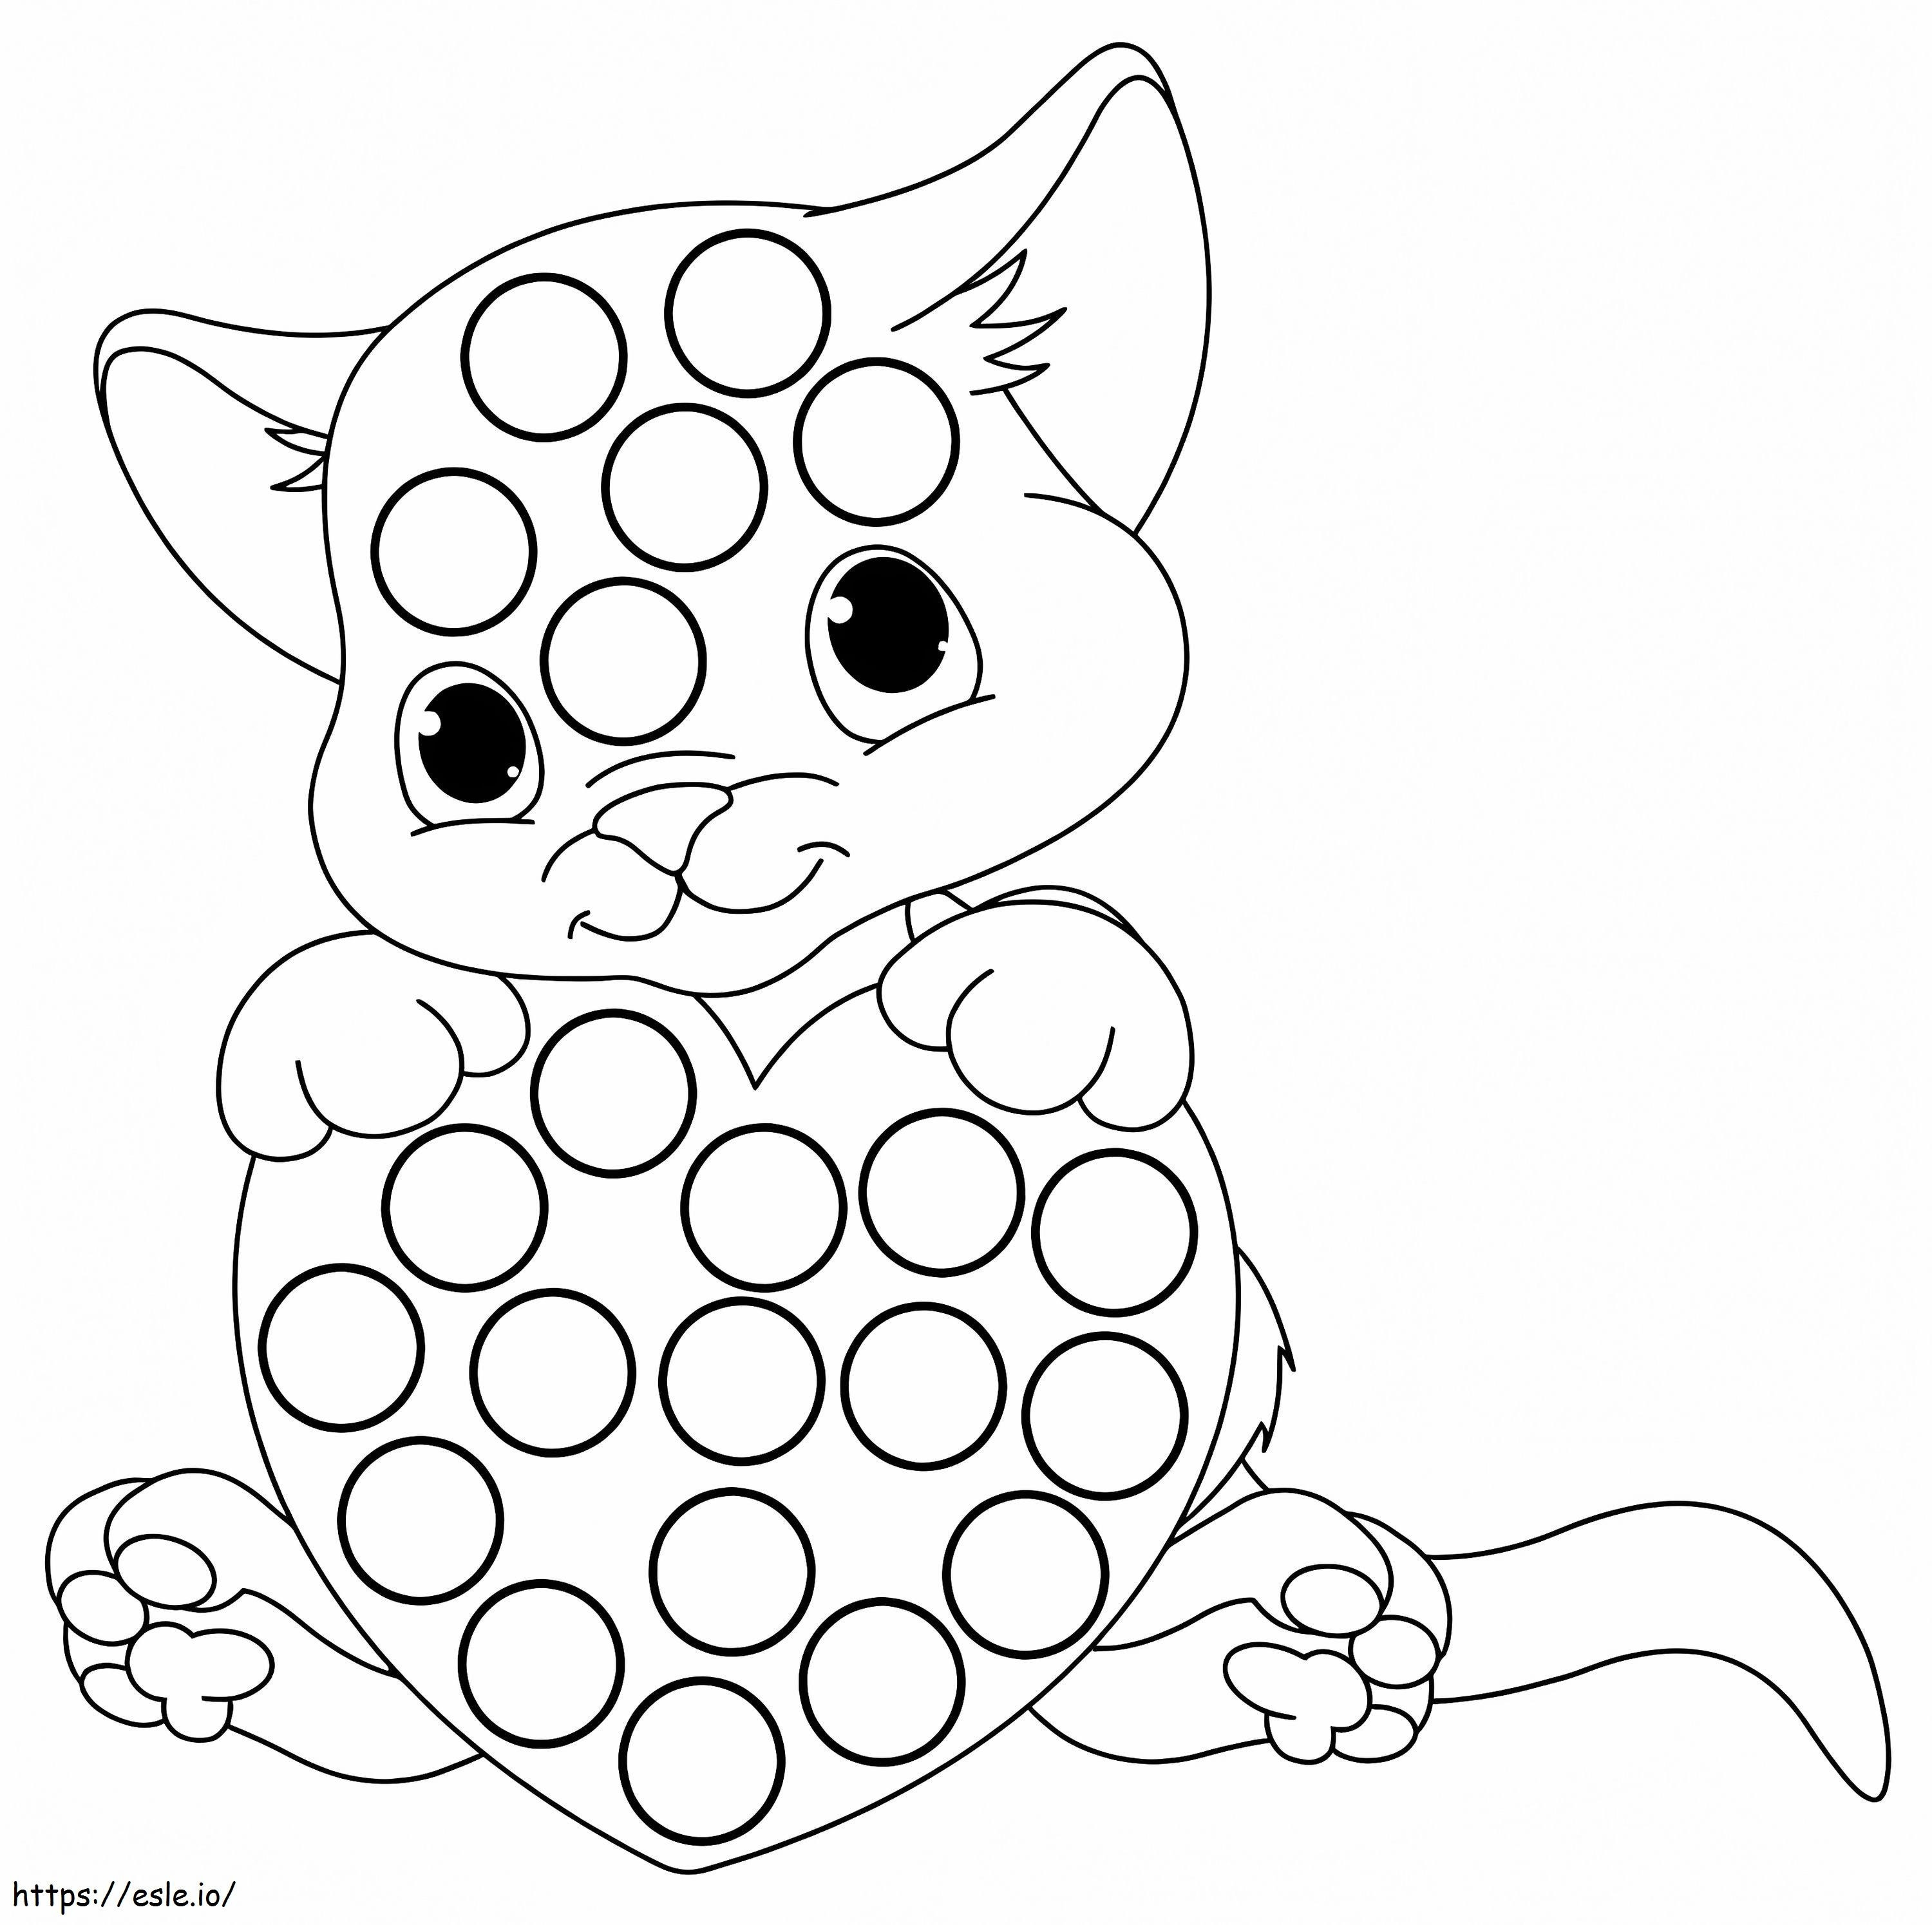 Marcador de pontos de gatinho para colorir